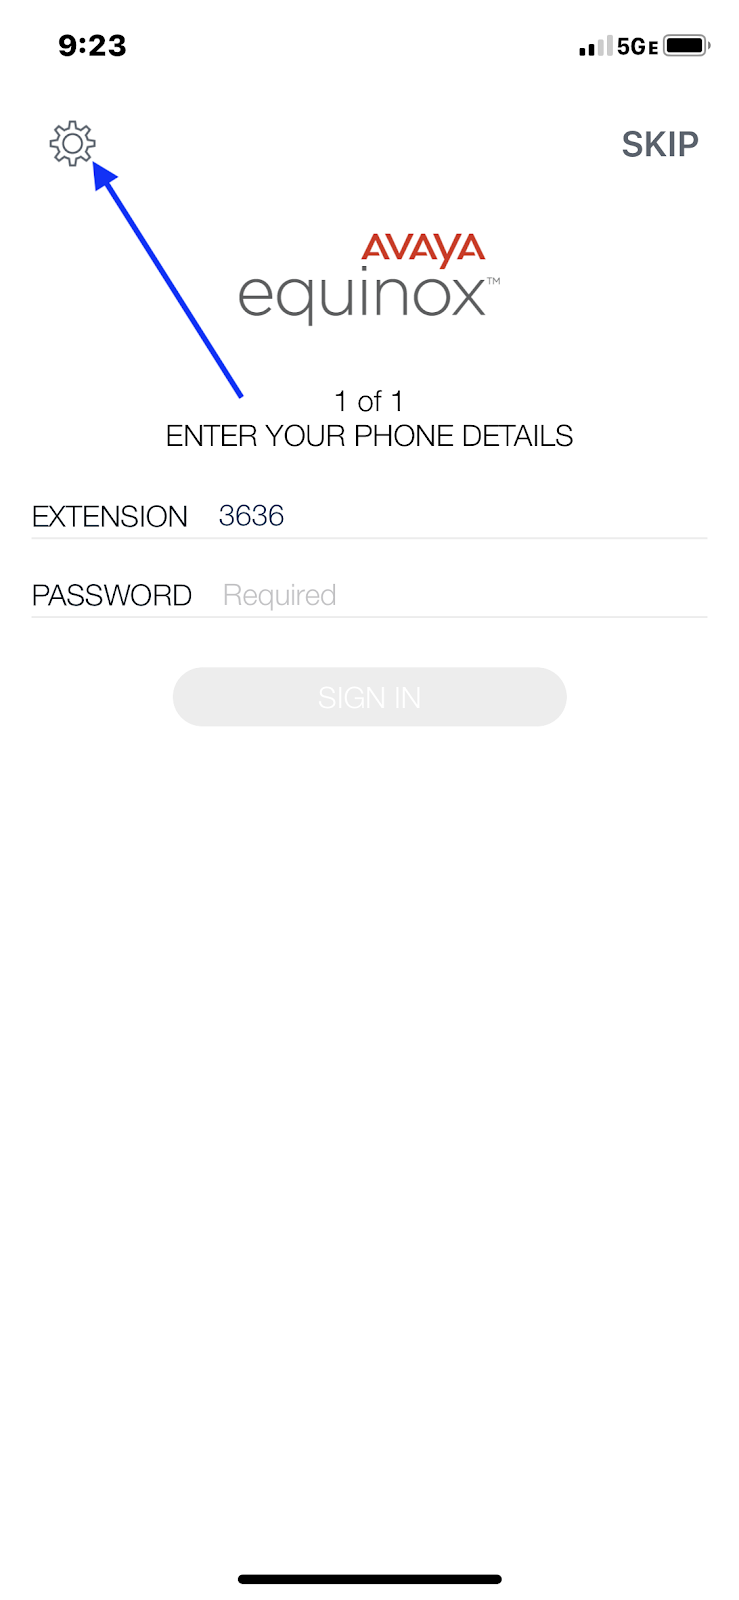 Avaya Equinox iOS enabling accessing settings